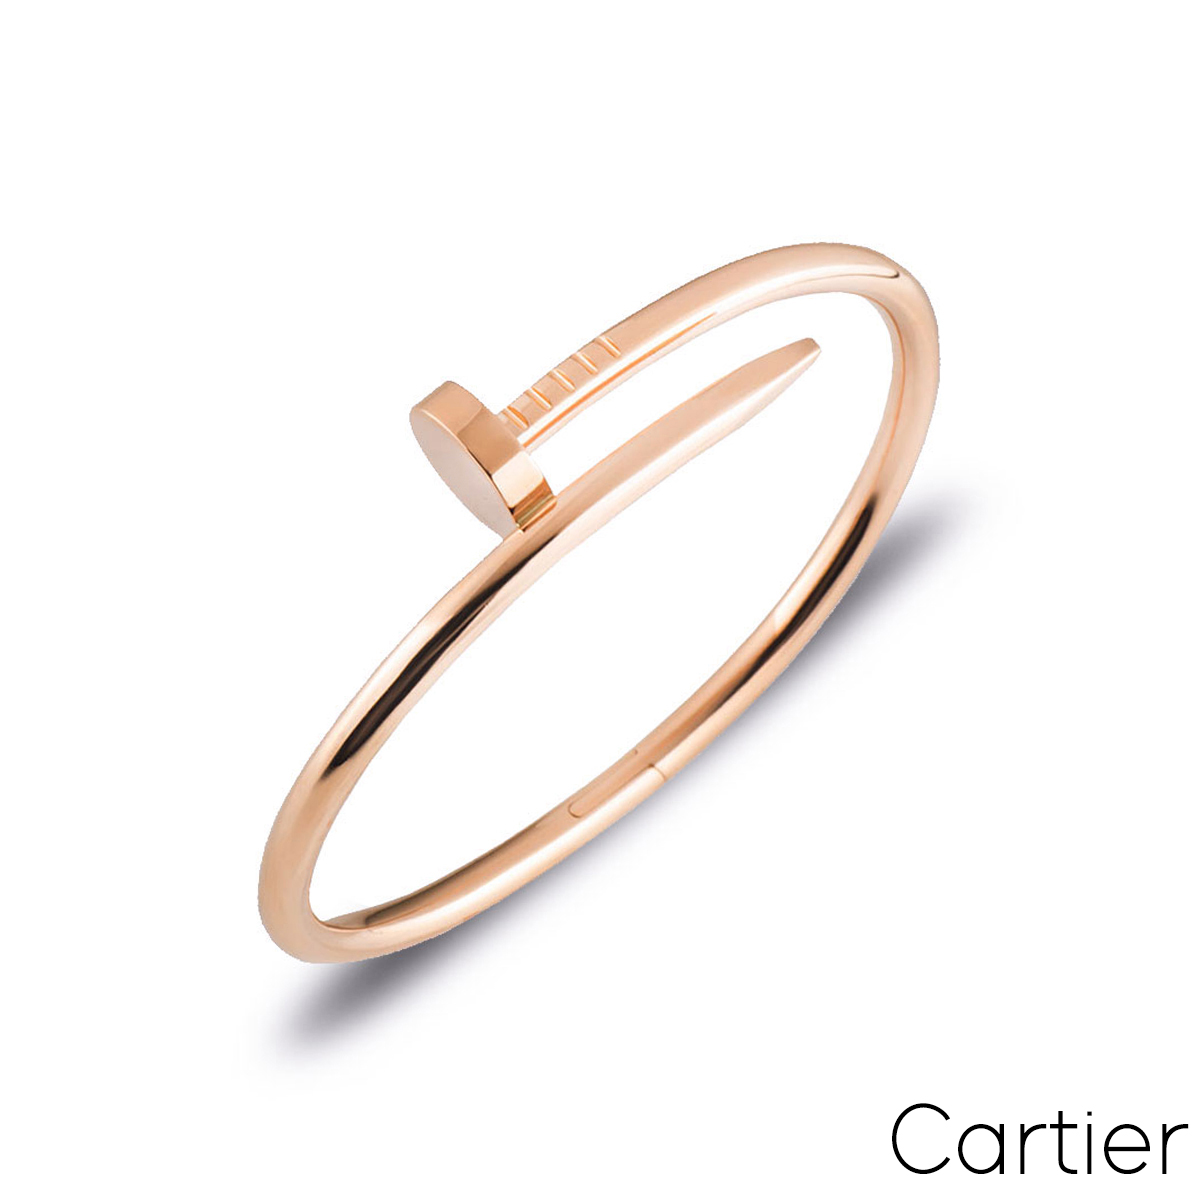 Cartier Rose Gold Plain Juste Un Clou Bracelet Size 18 B6048118